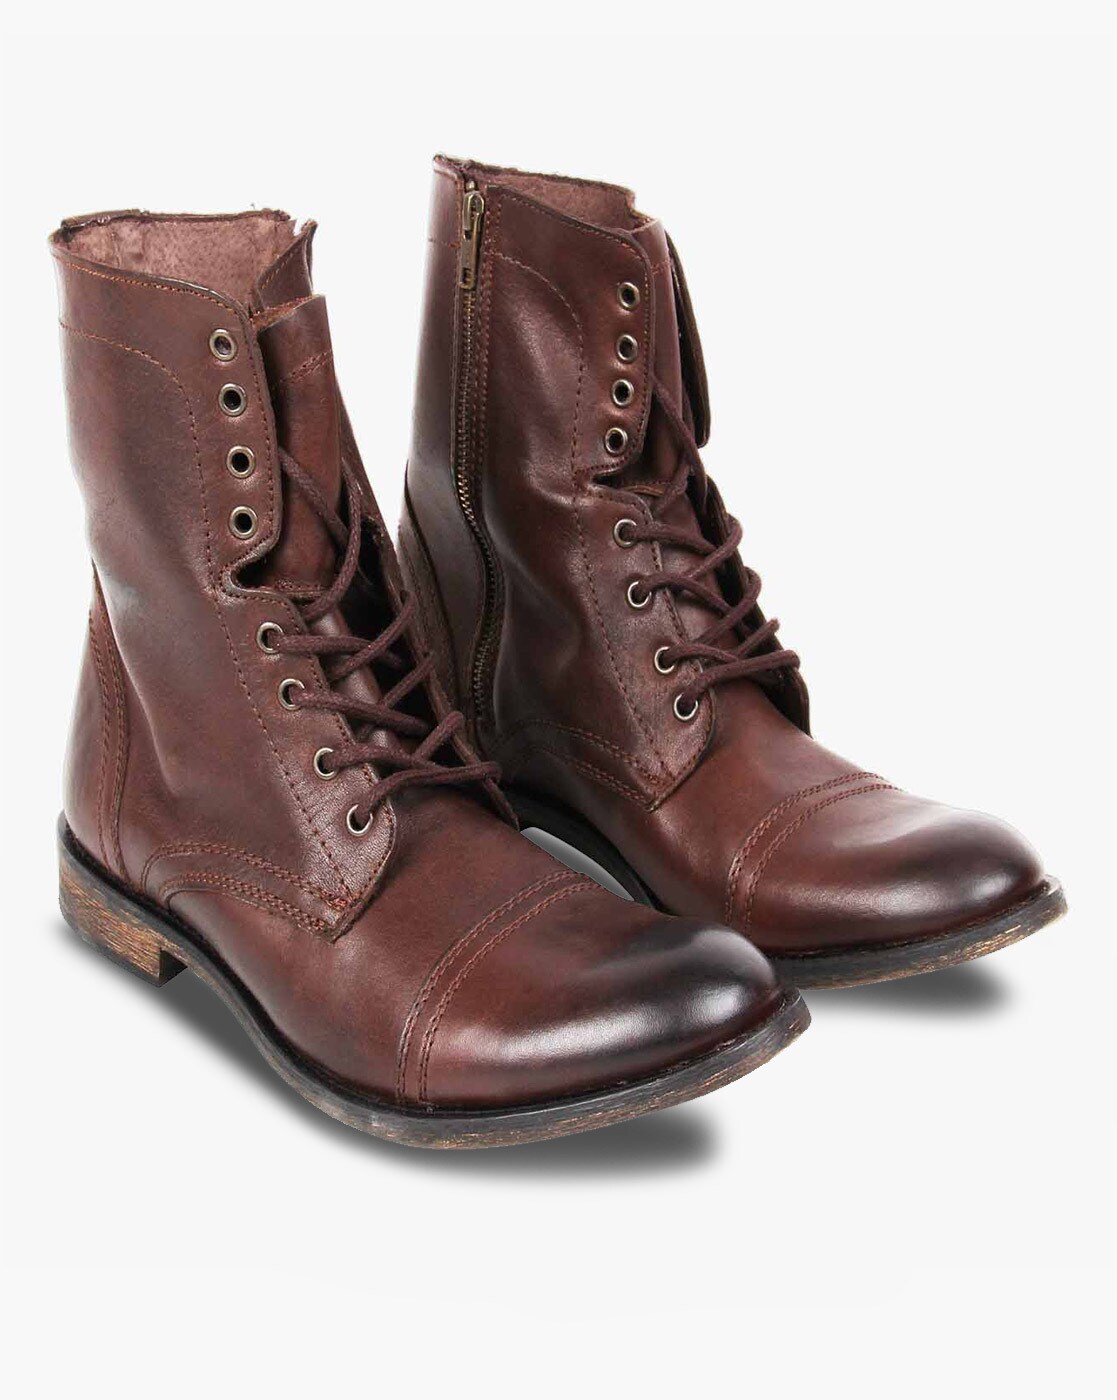 steve madden brown boots